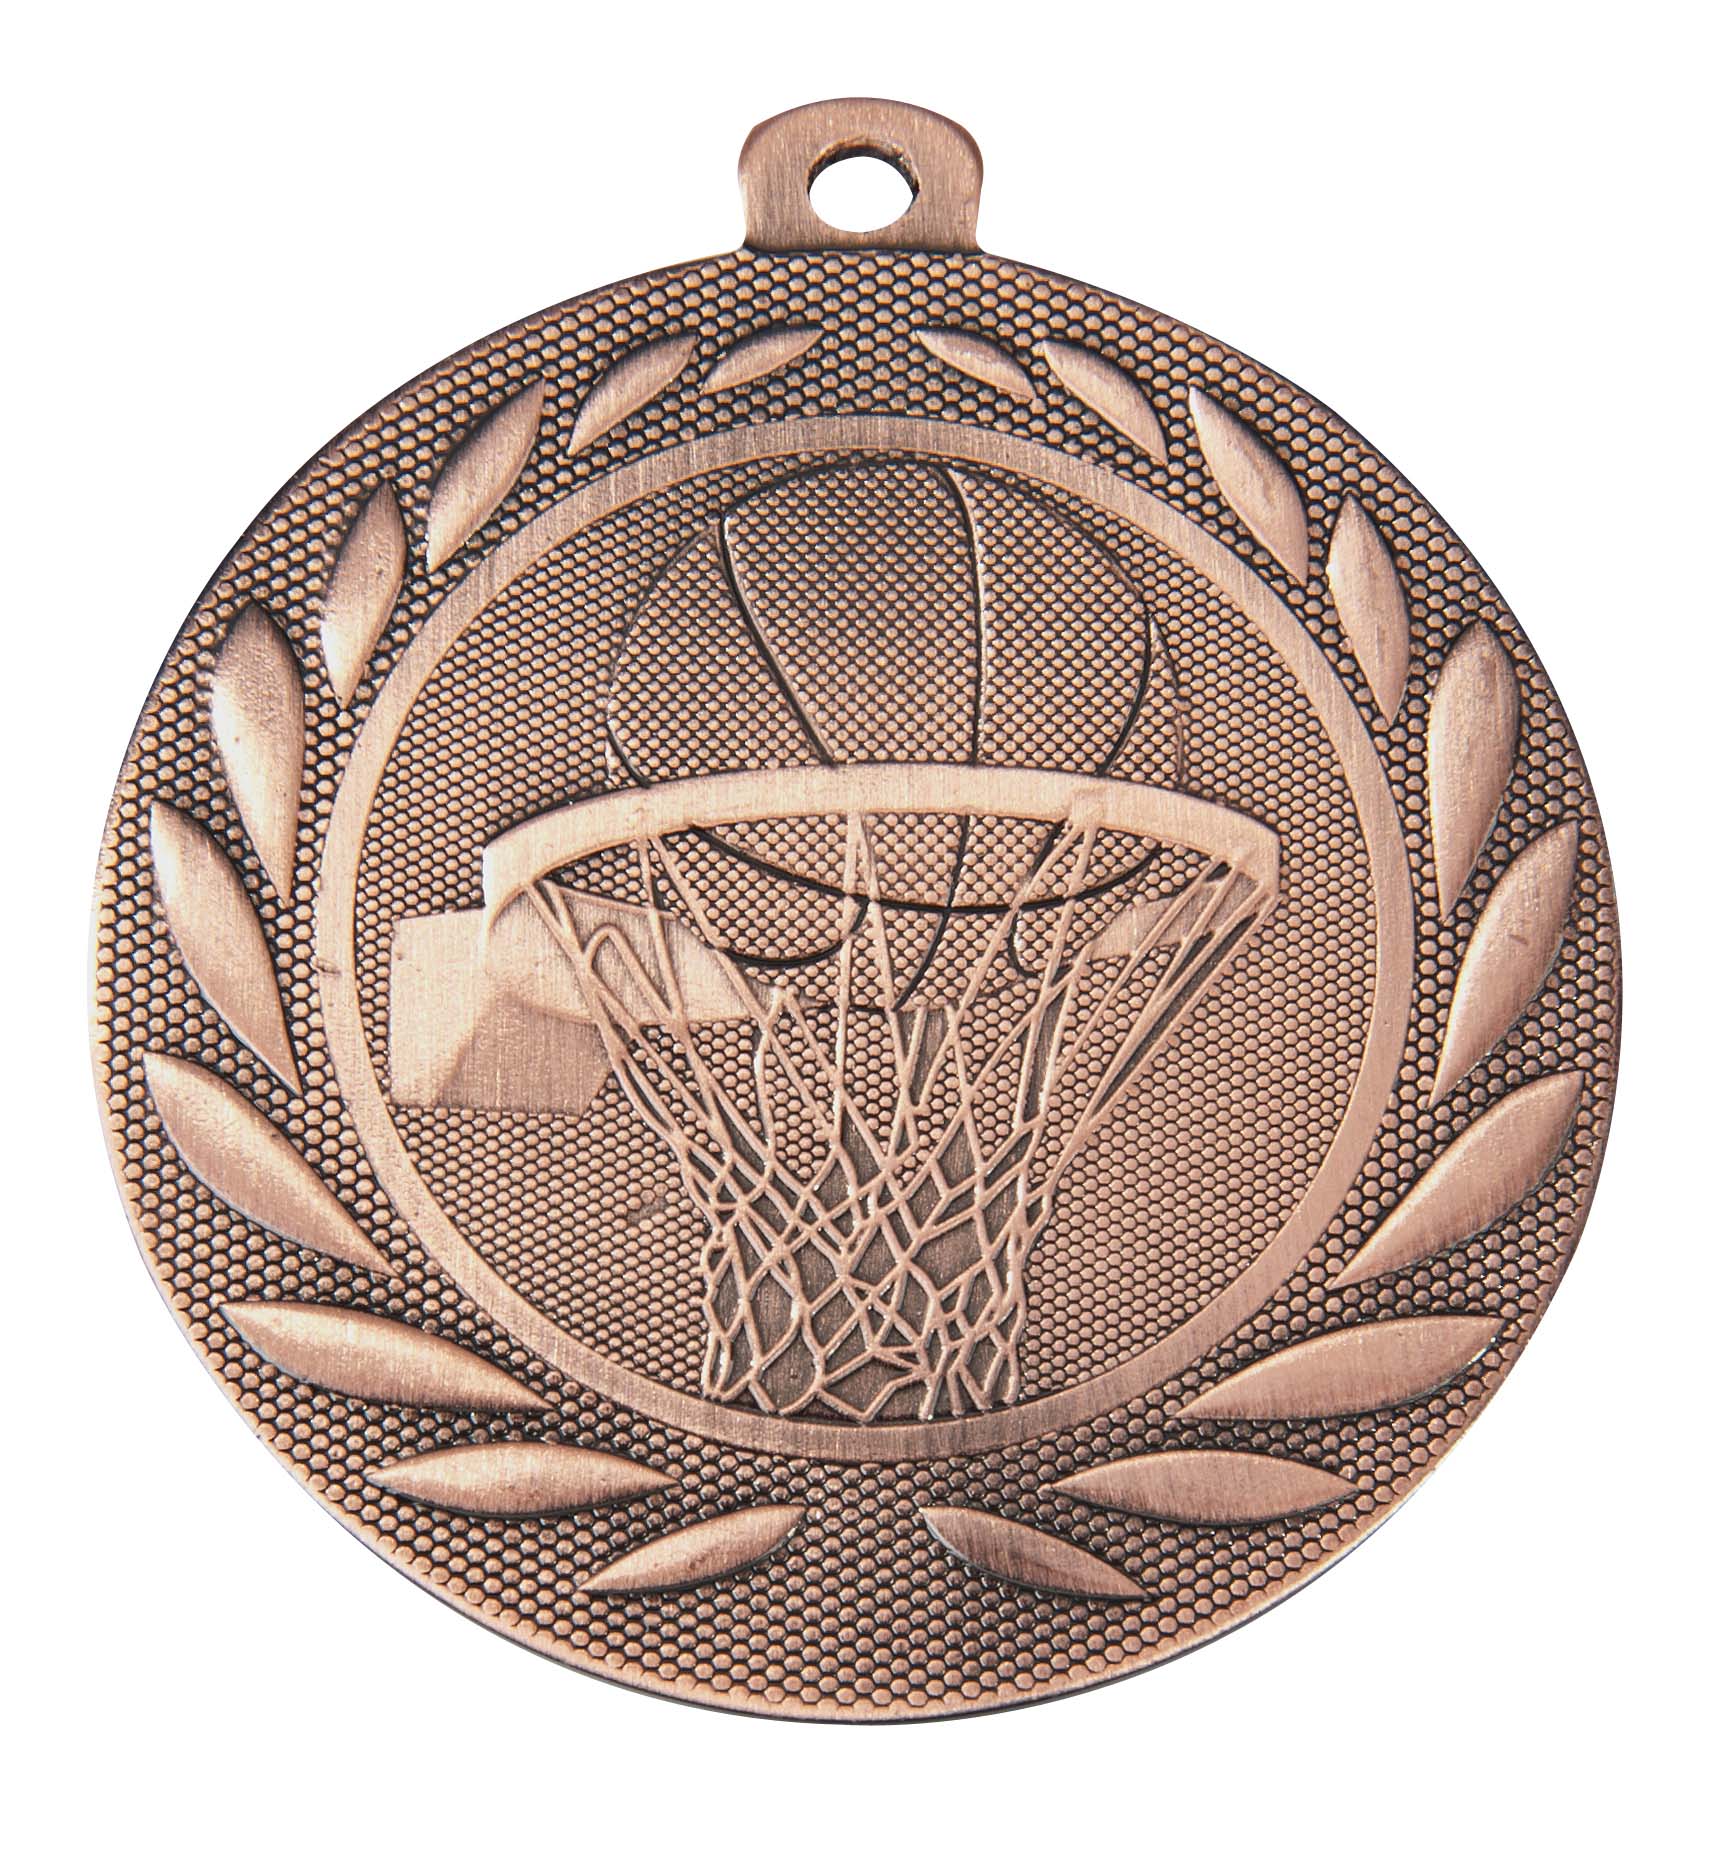 Basketball-Medaille DI5000M inkl. Band und Beschriftung Bronze Fertig montiert gegen Aufpreis